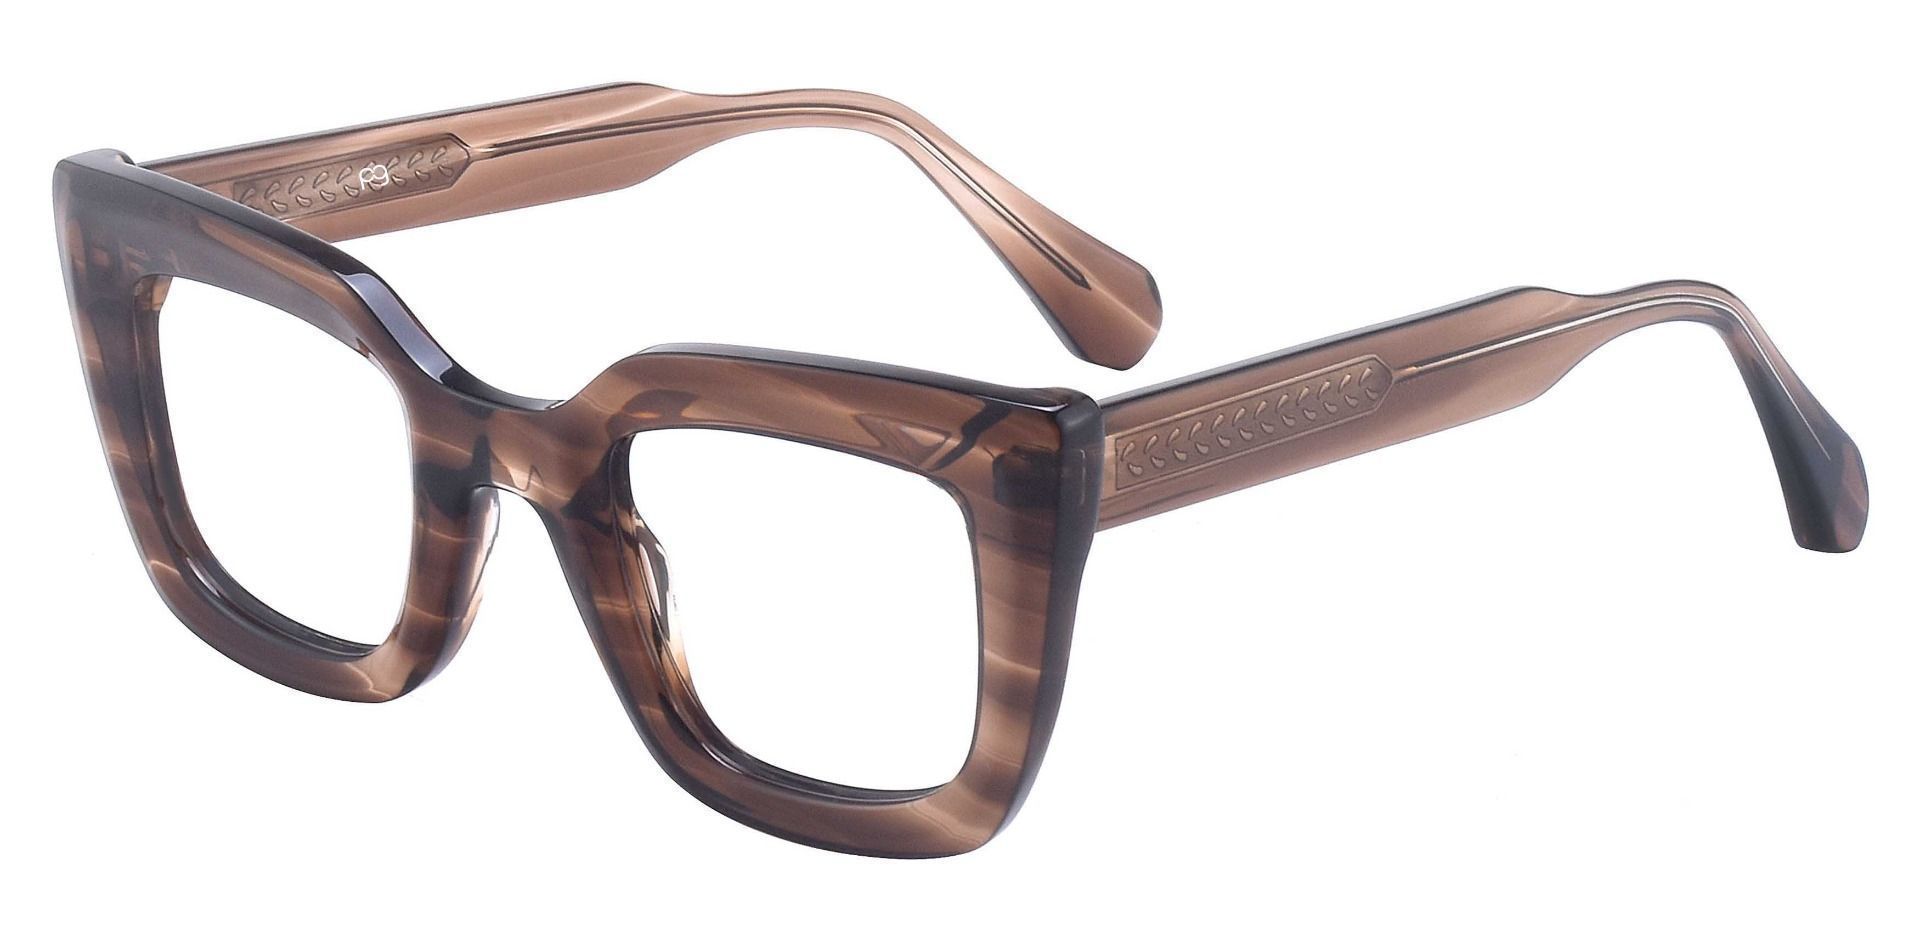 Bonham Cat Eye Prescription Glasses - Brown | Women's Eyeglasses ...